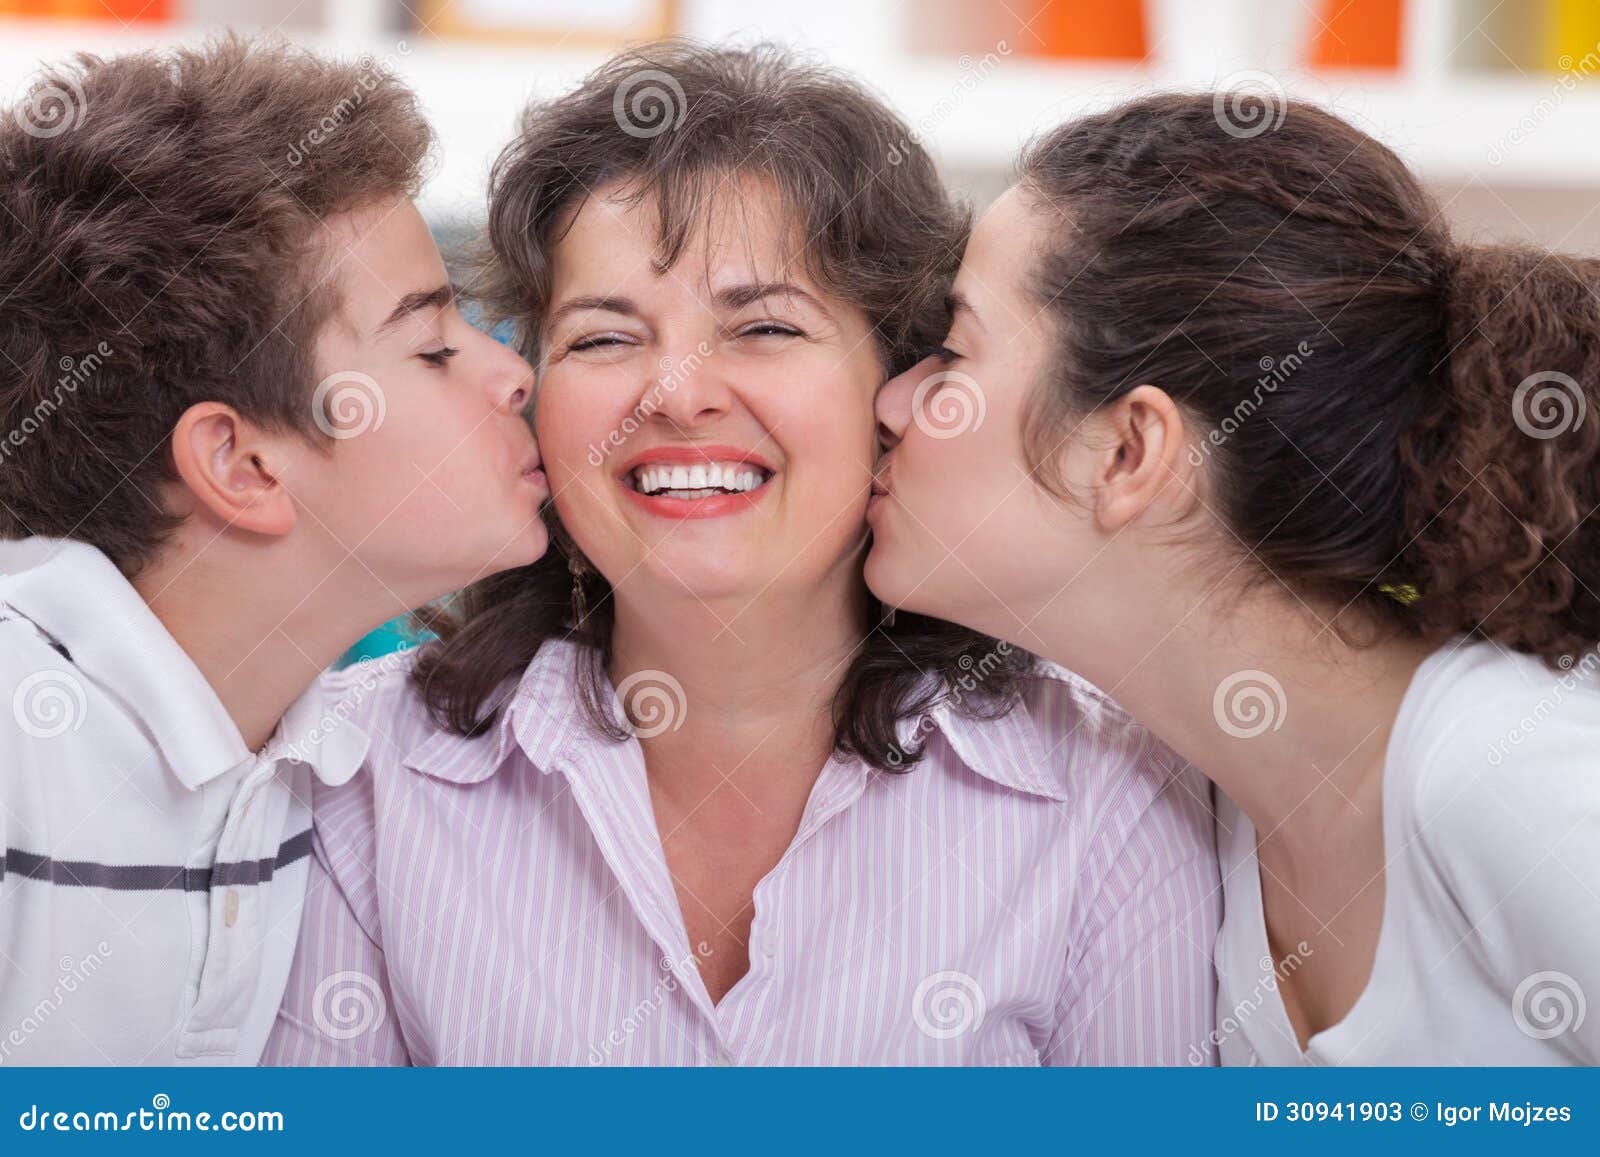 Maman heureuse. Enfants de mêmes parents adorables embrassant leur mère